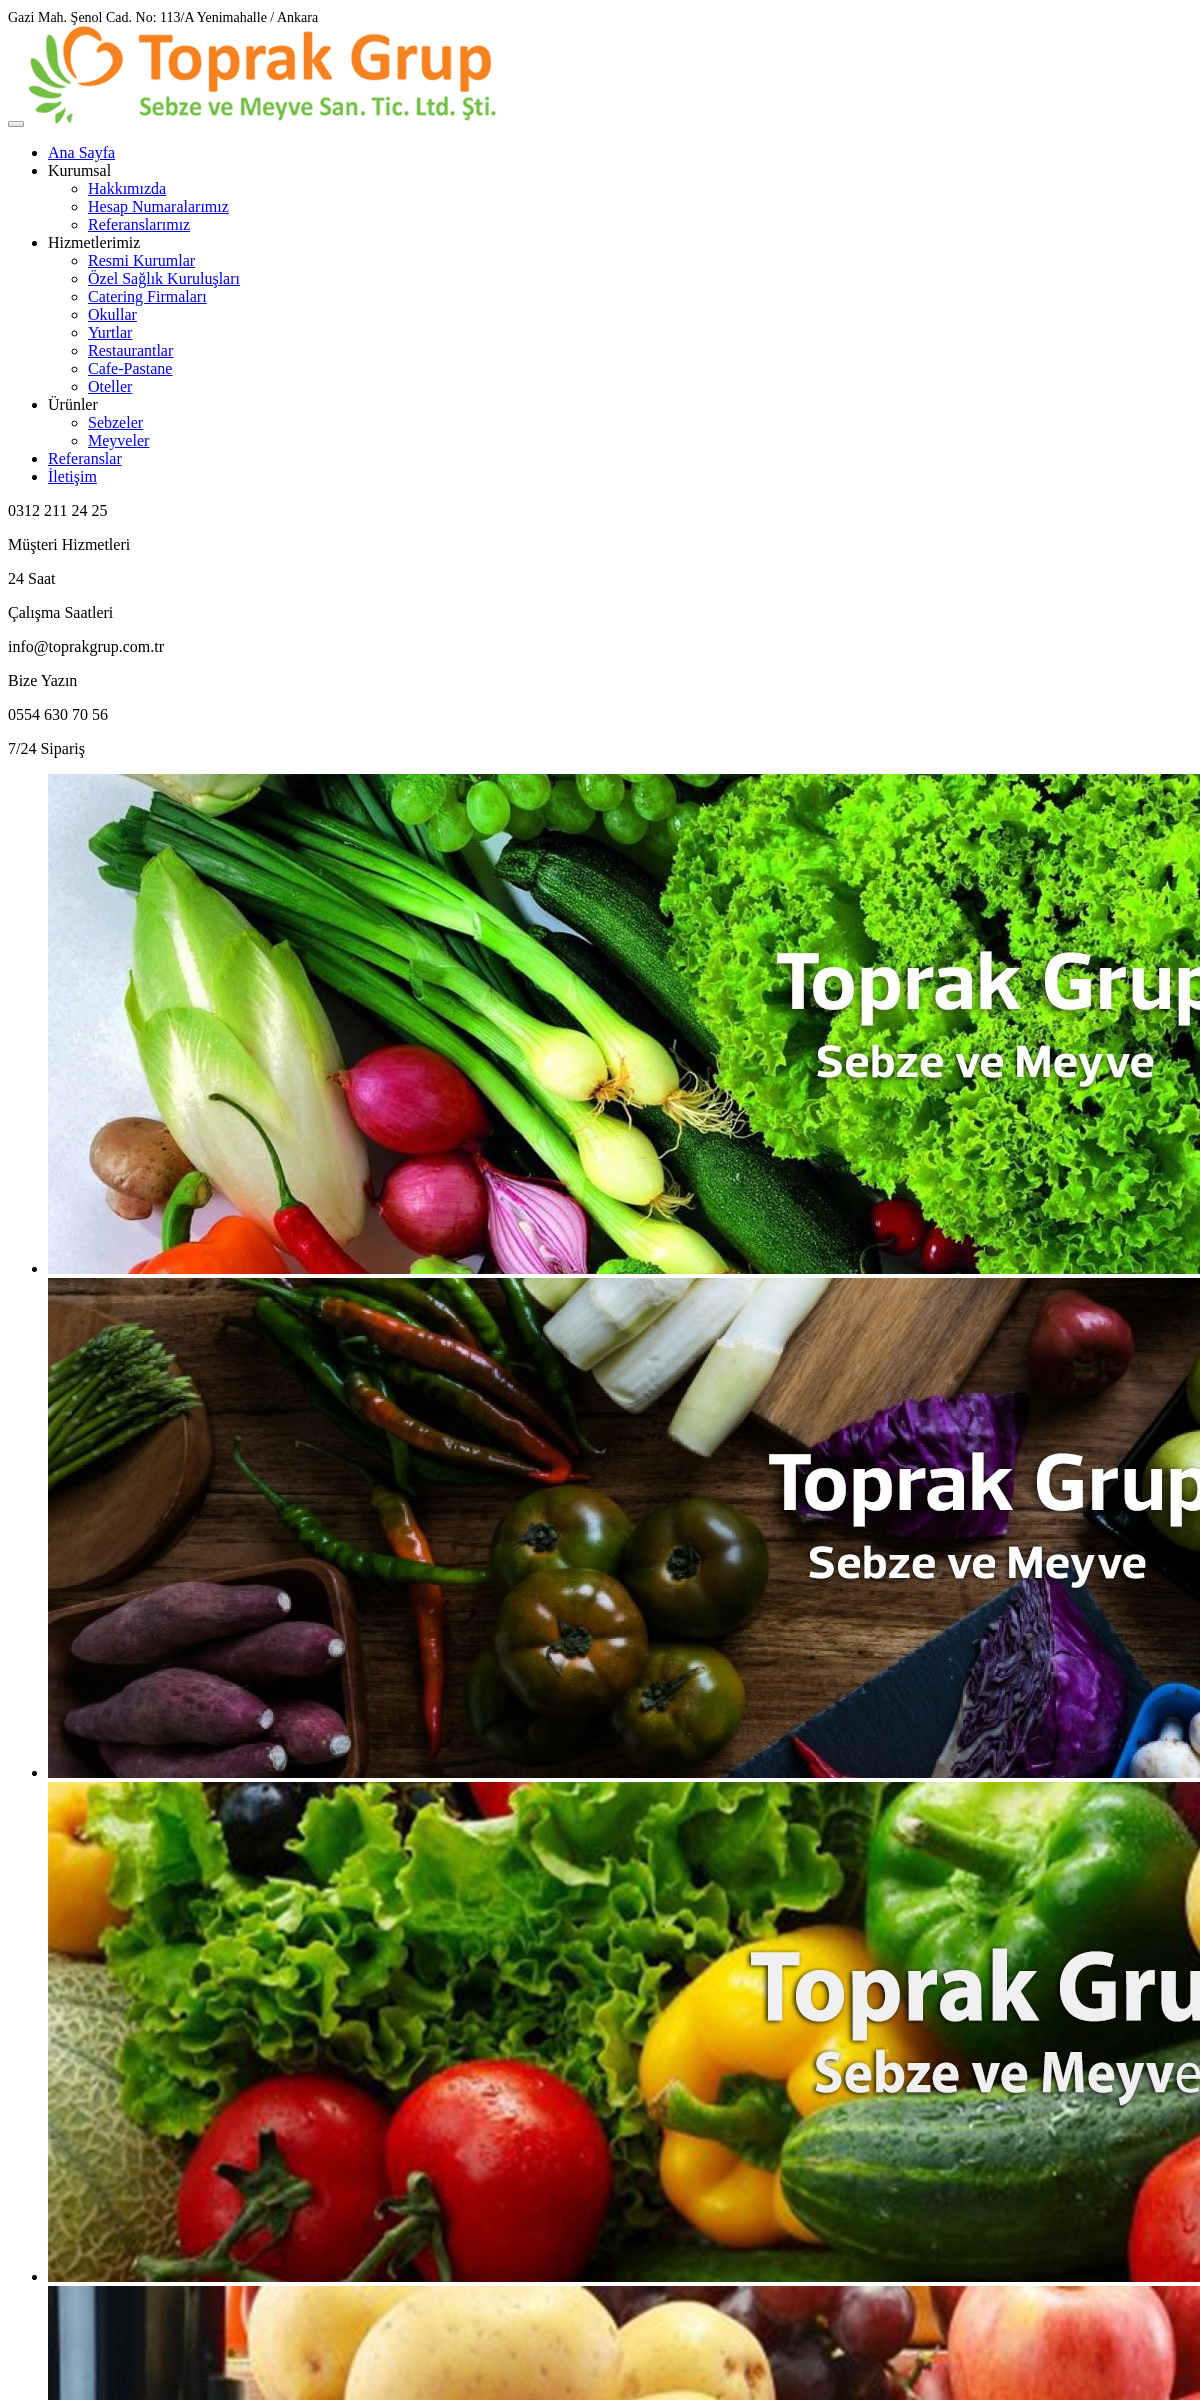 A complete backup of toprakgrup.com.tr